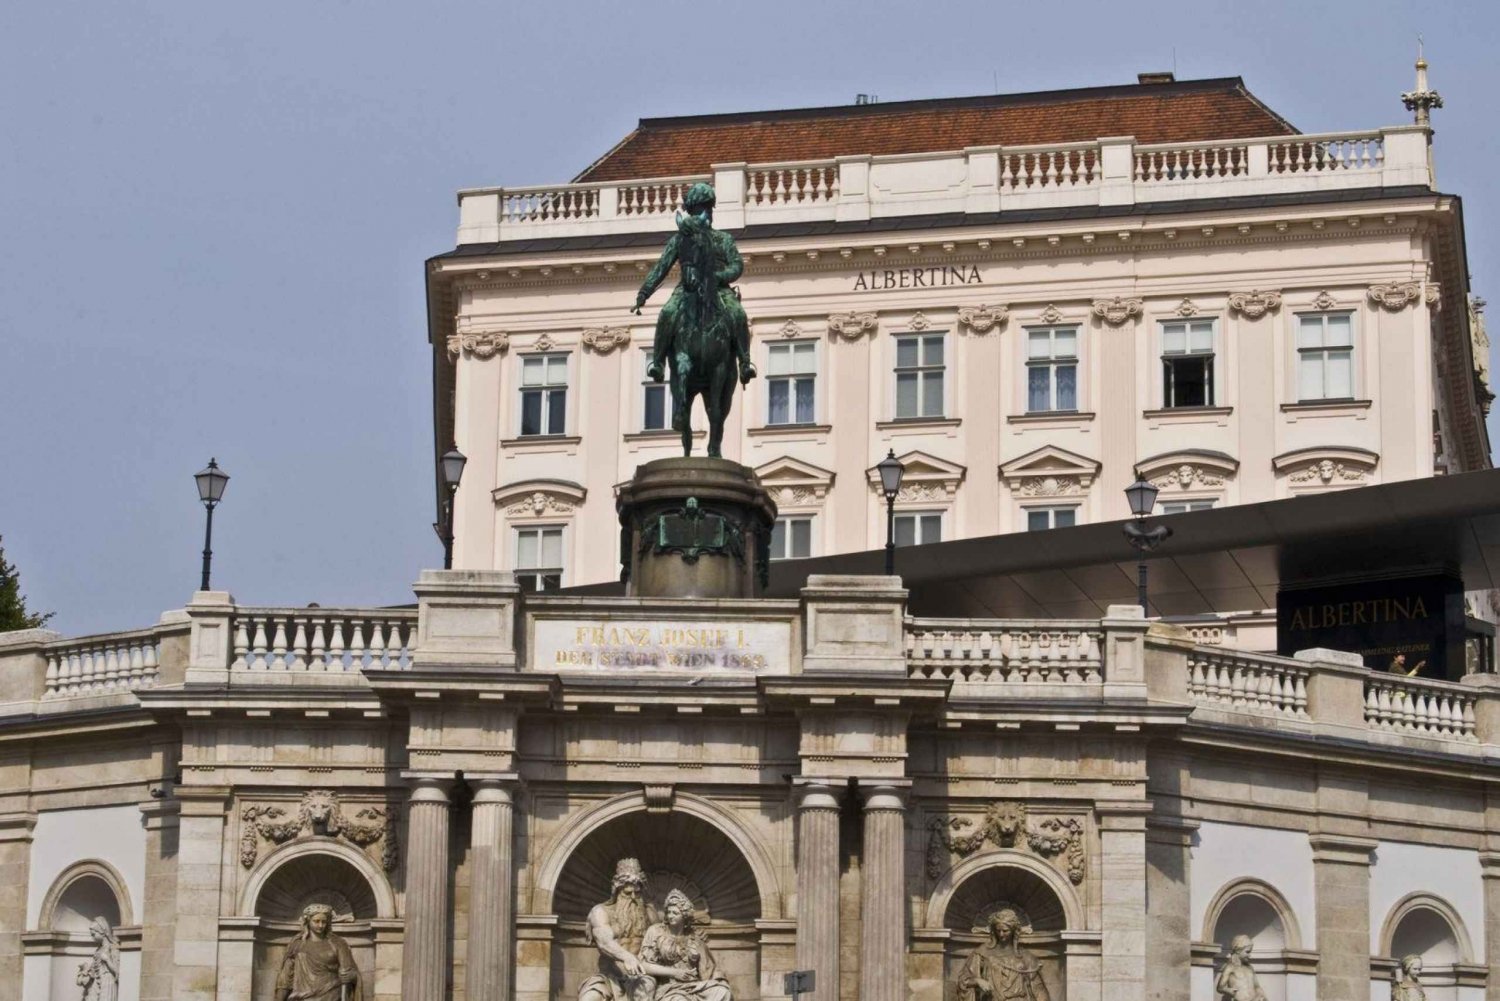 Vienna: The Luxury of Albertina Palace Interior Audio Tour